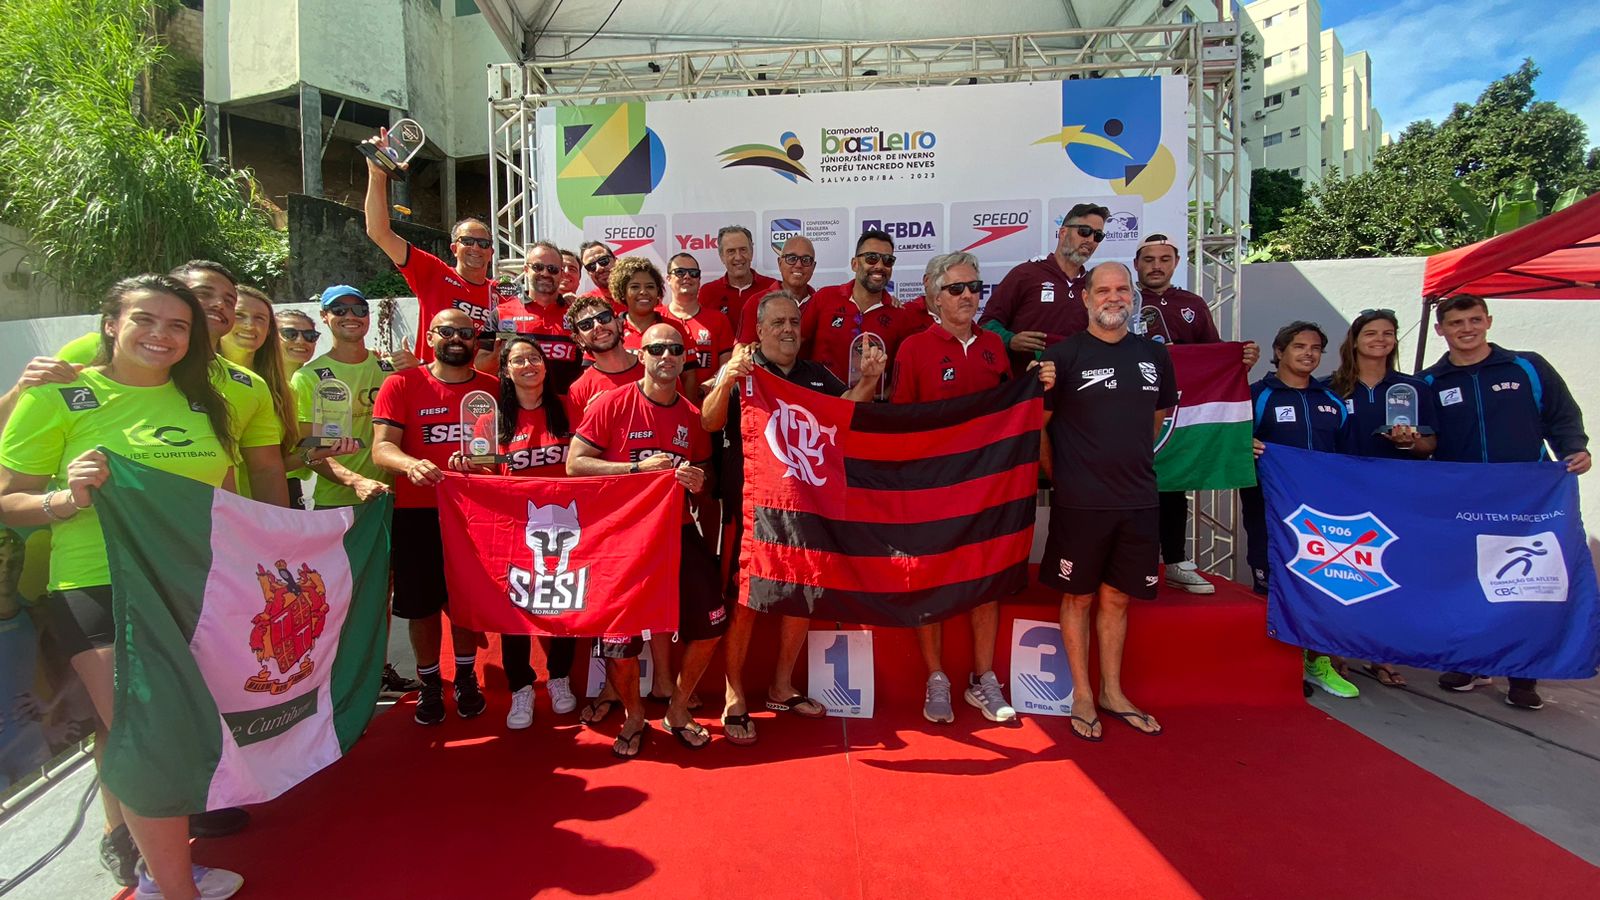 Flamengo é campeão geral do Campeonato Brasileiro Infantil e Juvenil de  Nado Artístico - Notícia :: CBDA